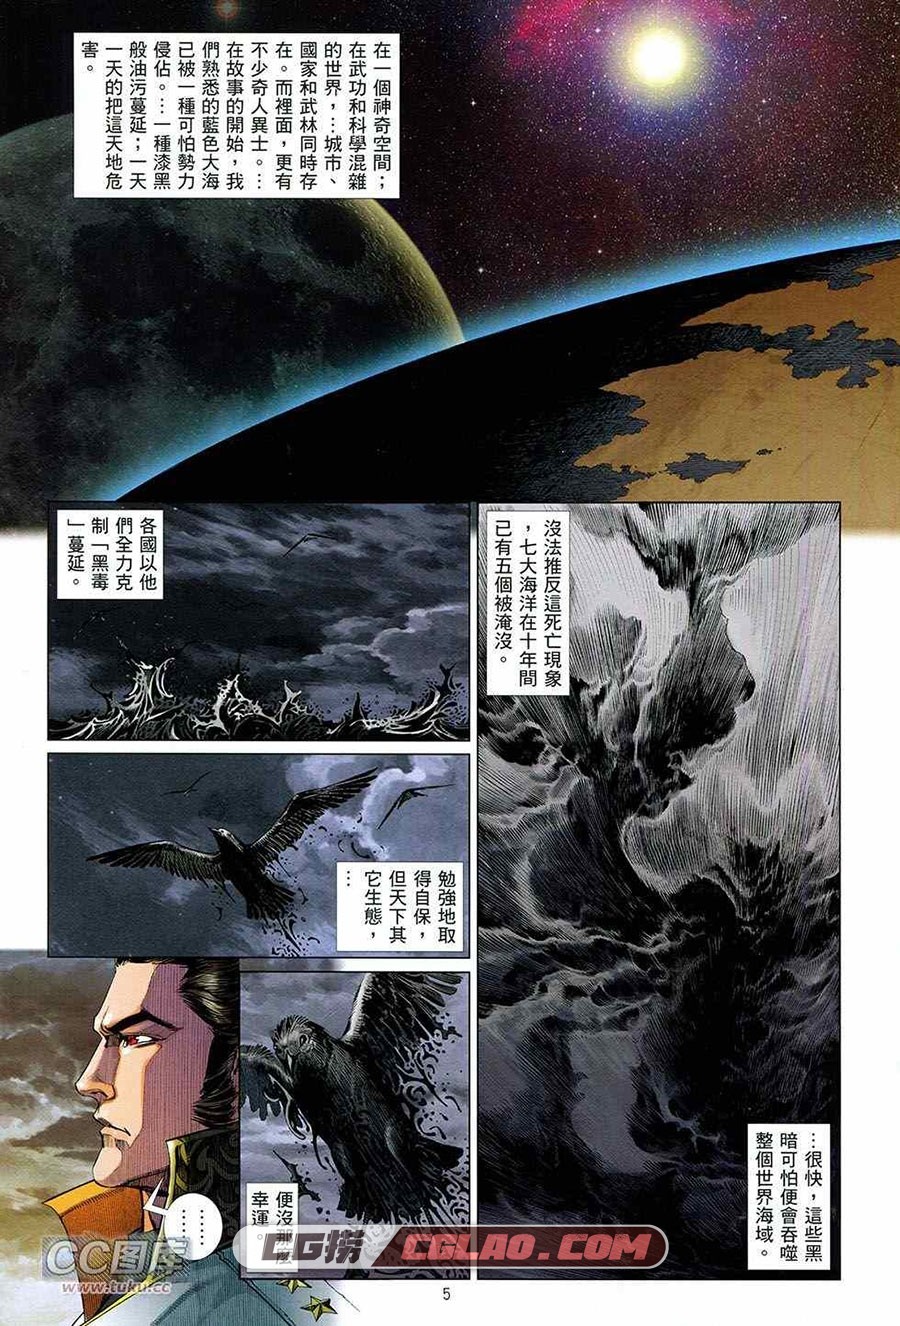 集结号 海洋二号 全一册 漫画全集下载 百度网盘,05.jpg